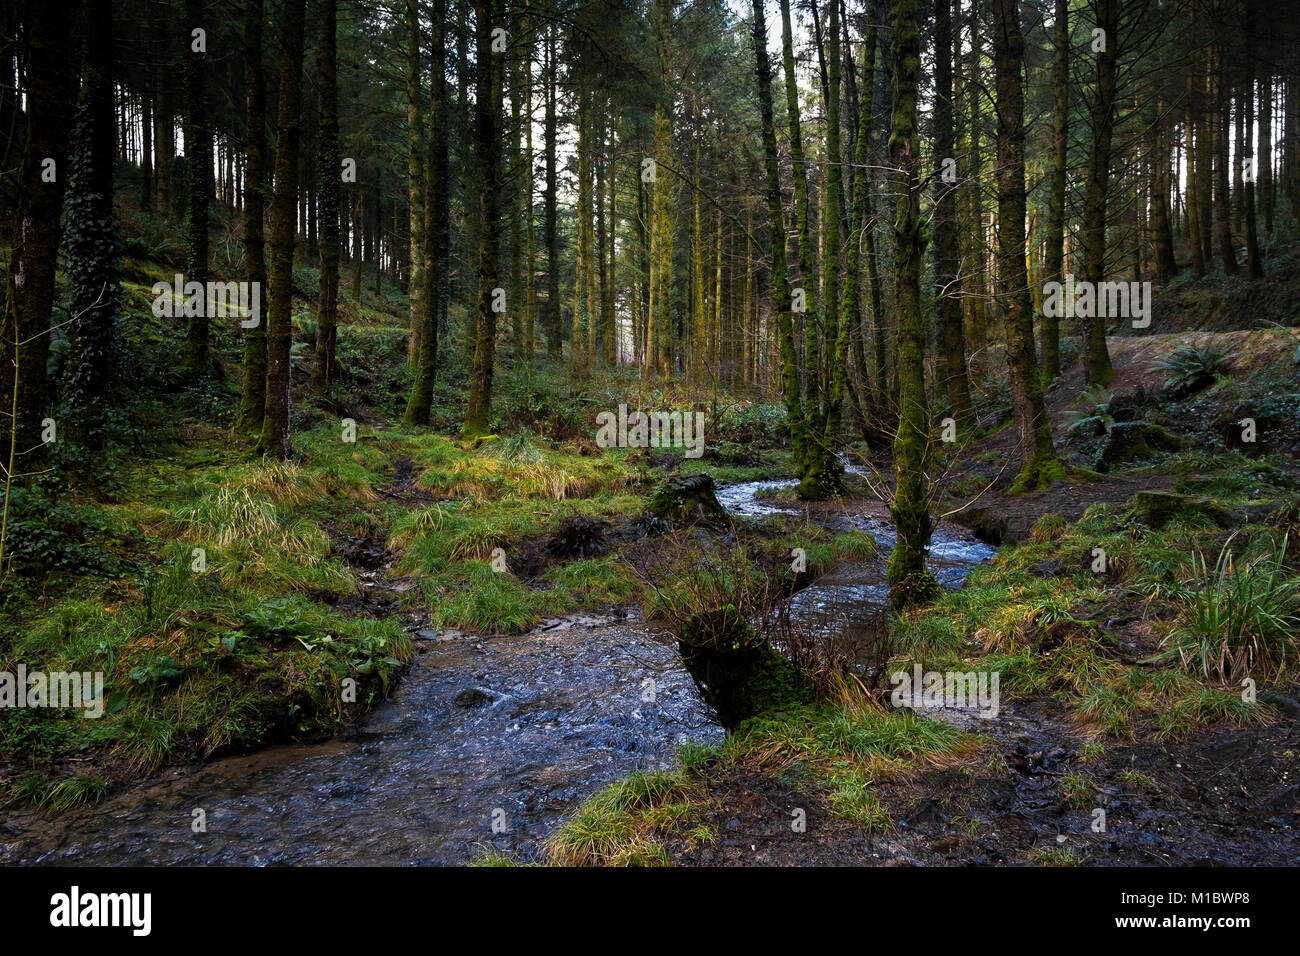 Cardinham boschi in Cornovaglia - una corrente che fluisce attraverso i boschi Cardinham in Bodmin Cornwall. Foto Stock